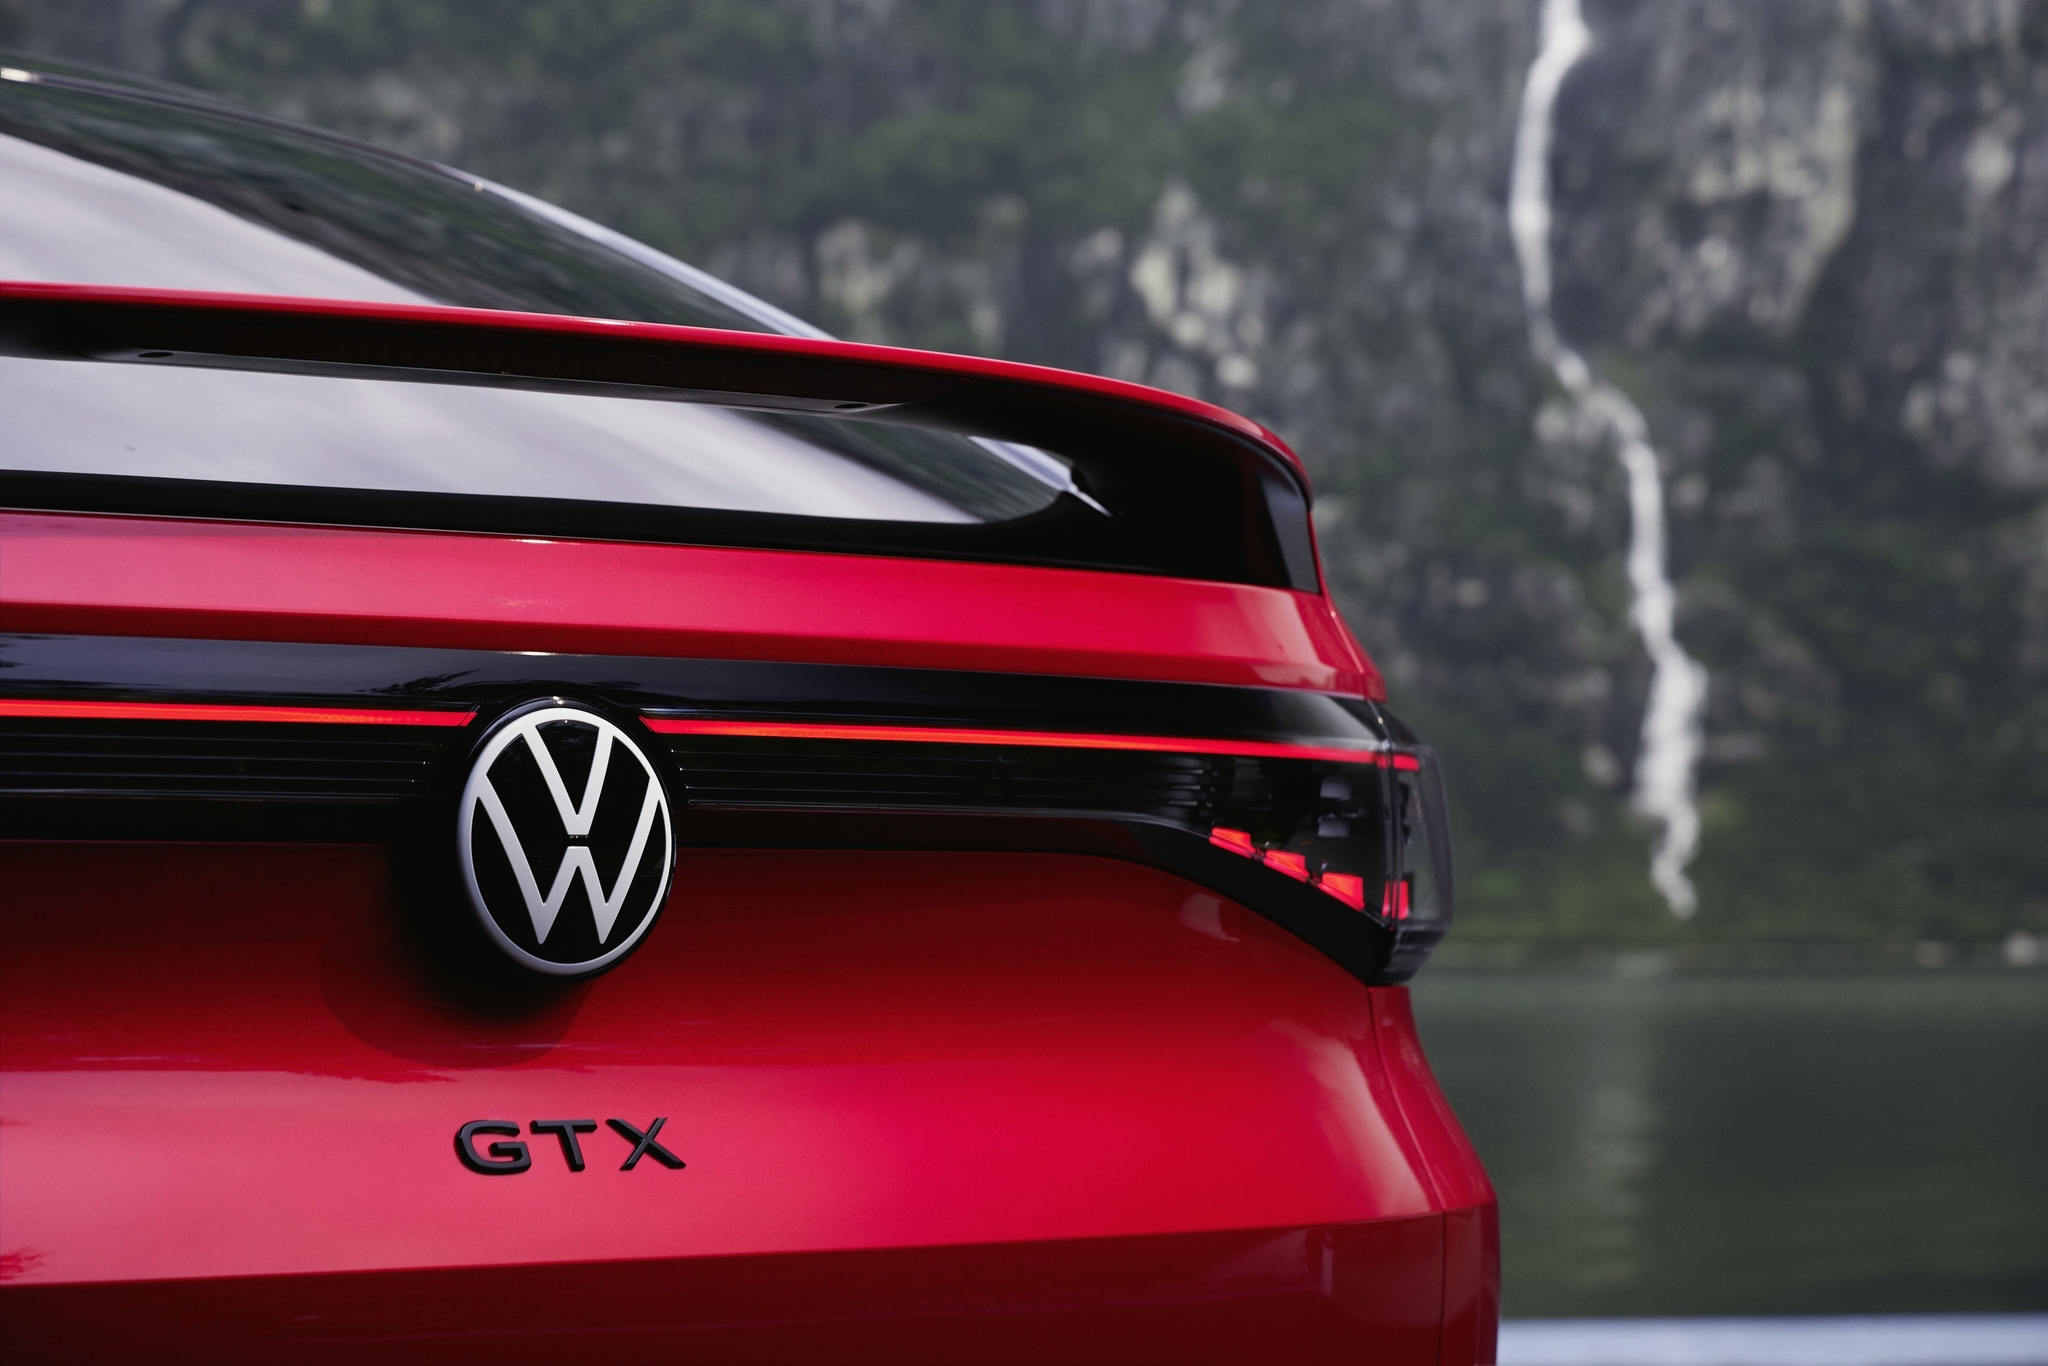 Компания Volkswagen окончательно откажется от моделей с индексом GTX